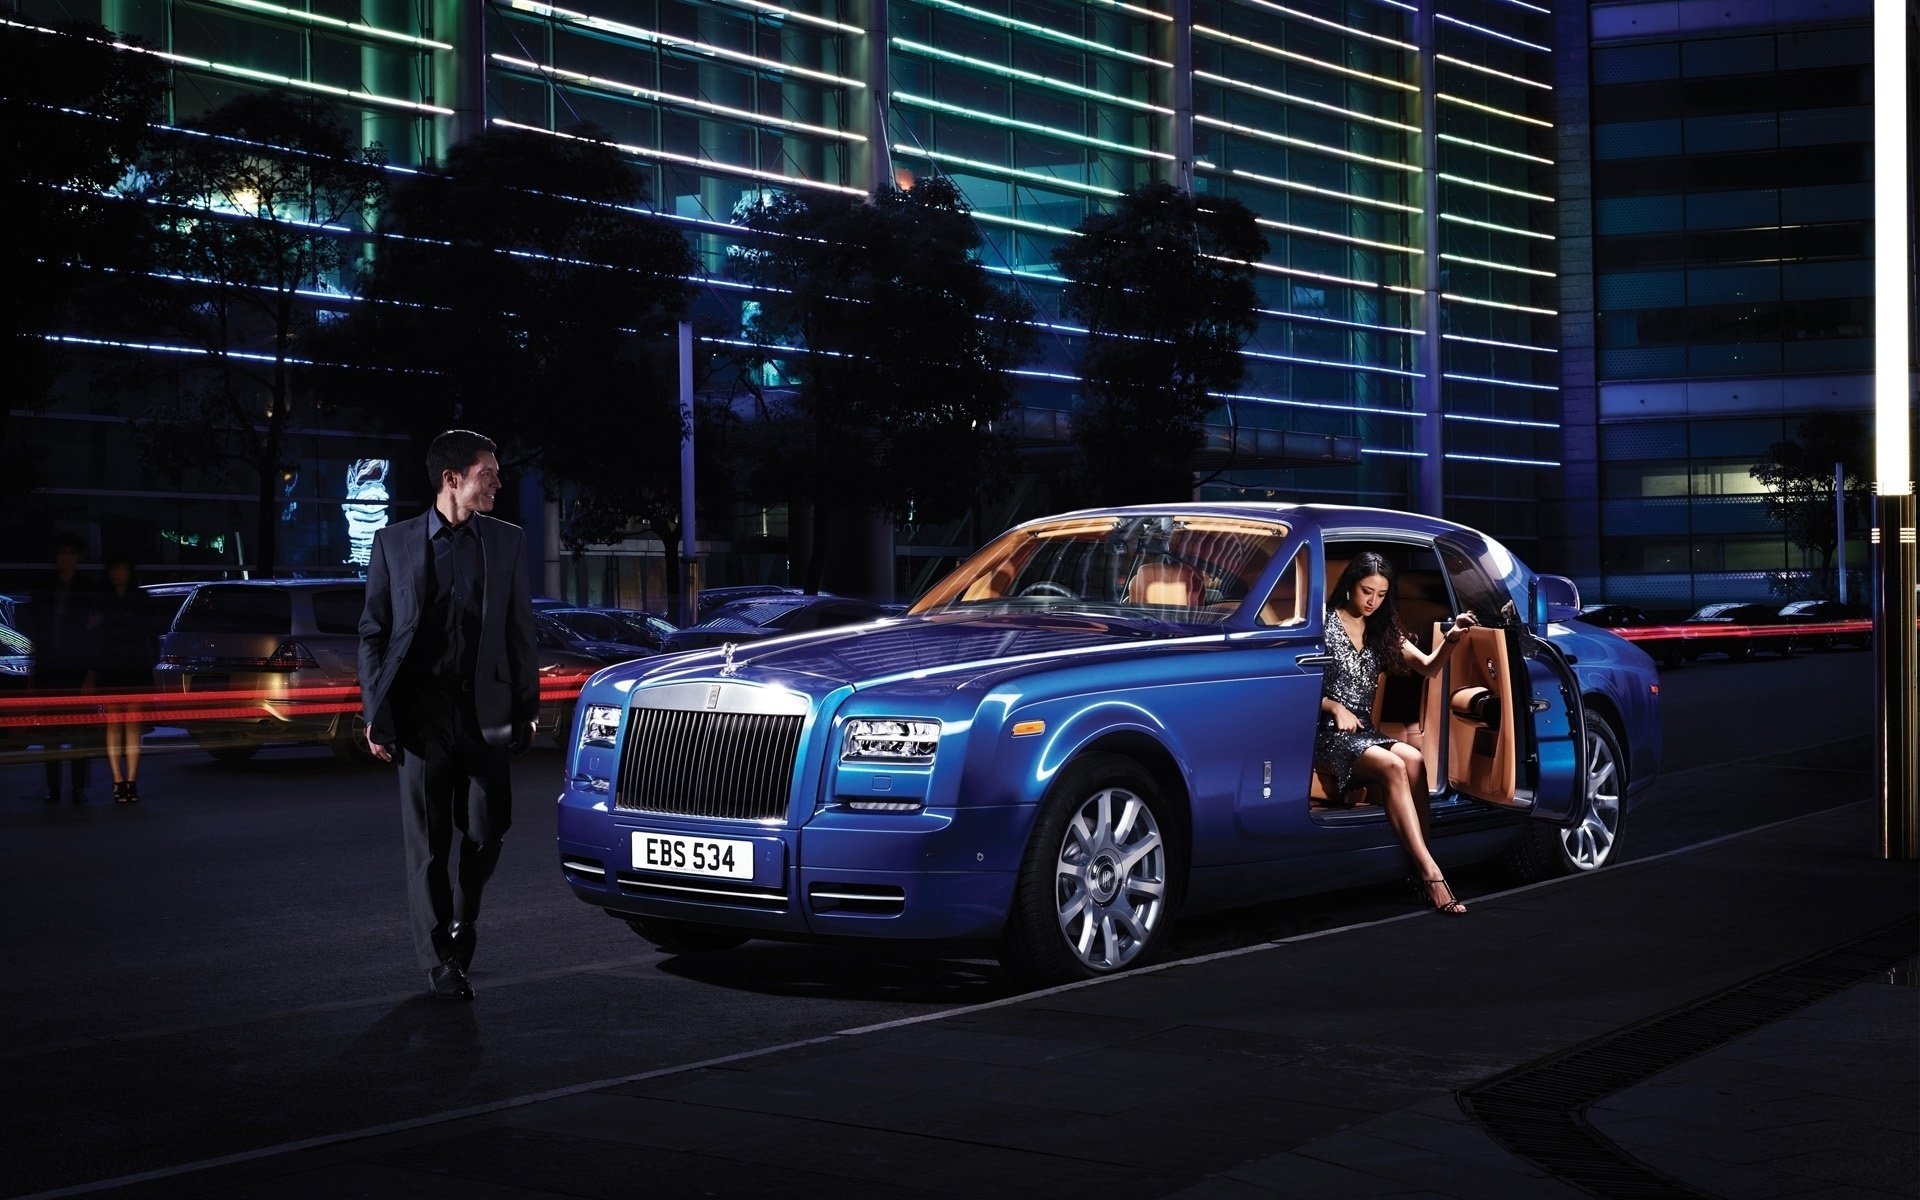 Rolls-Royce: Hình ảnh của xe Rolls-Royce đầy sang trọng và đẳng cấp sẽ khiến bạn thực sự chú ý. Hãy xem hình để cảm nhận được vẻ đẹp đầy khí chất của dòng xe này.